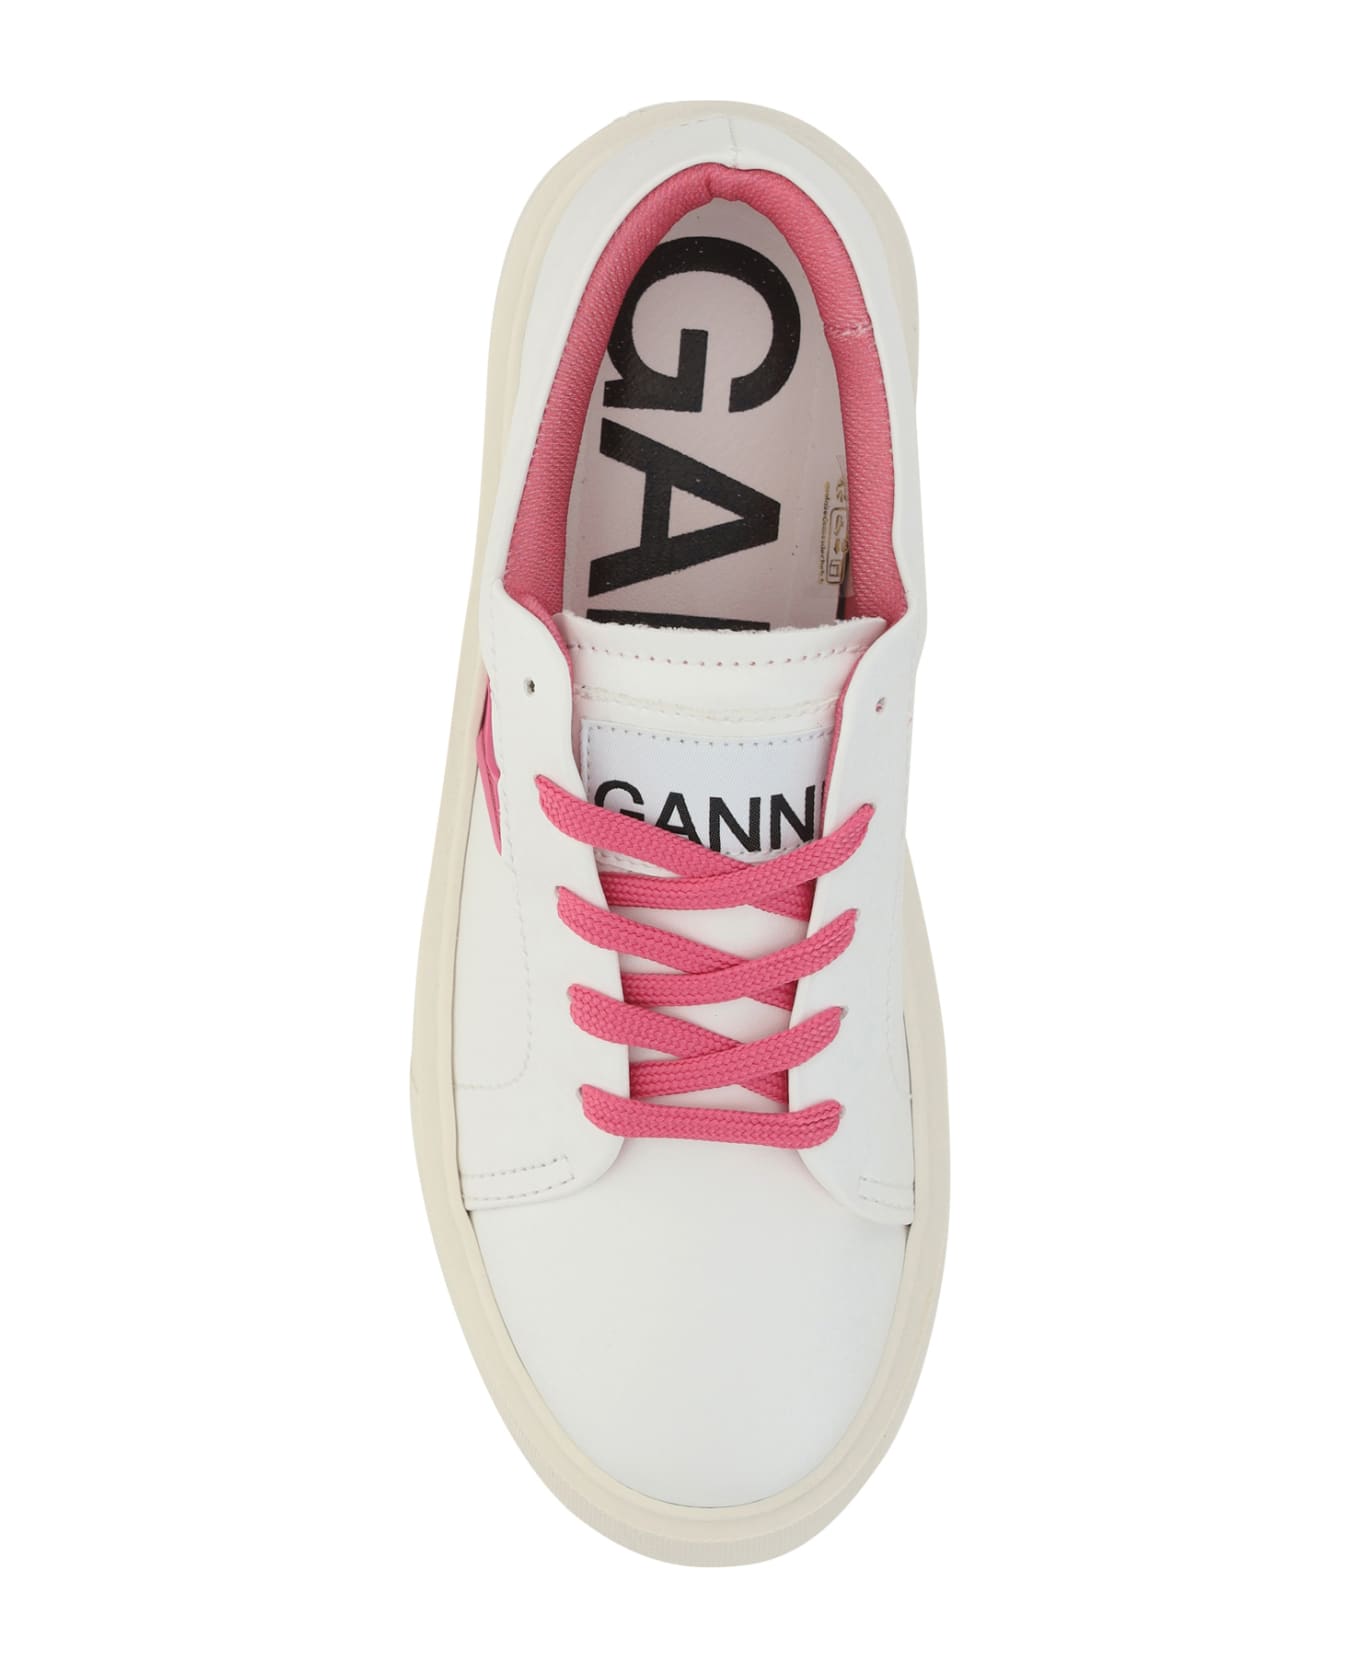 Ganni Sneakers - Shocking Pink